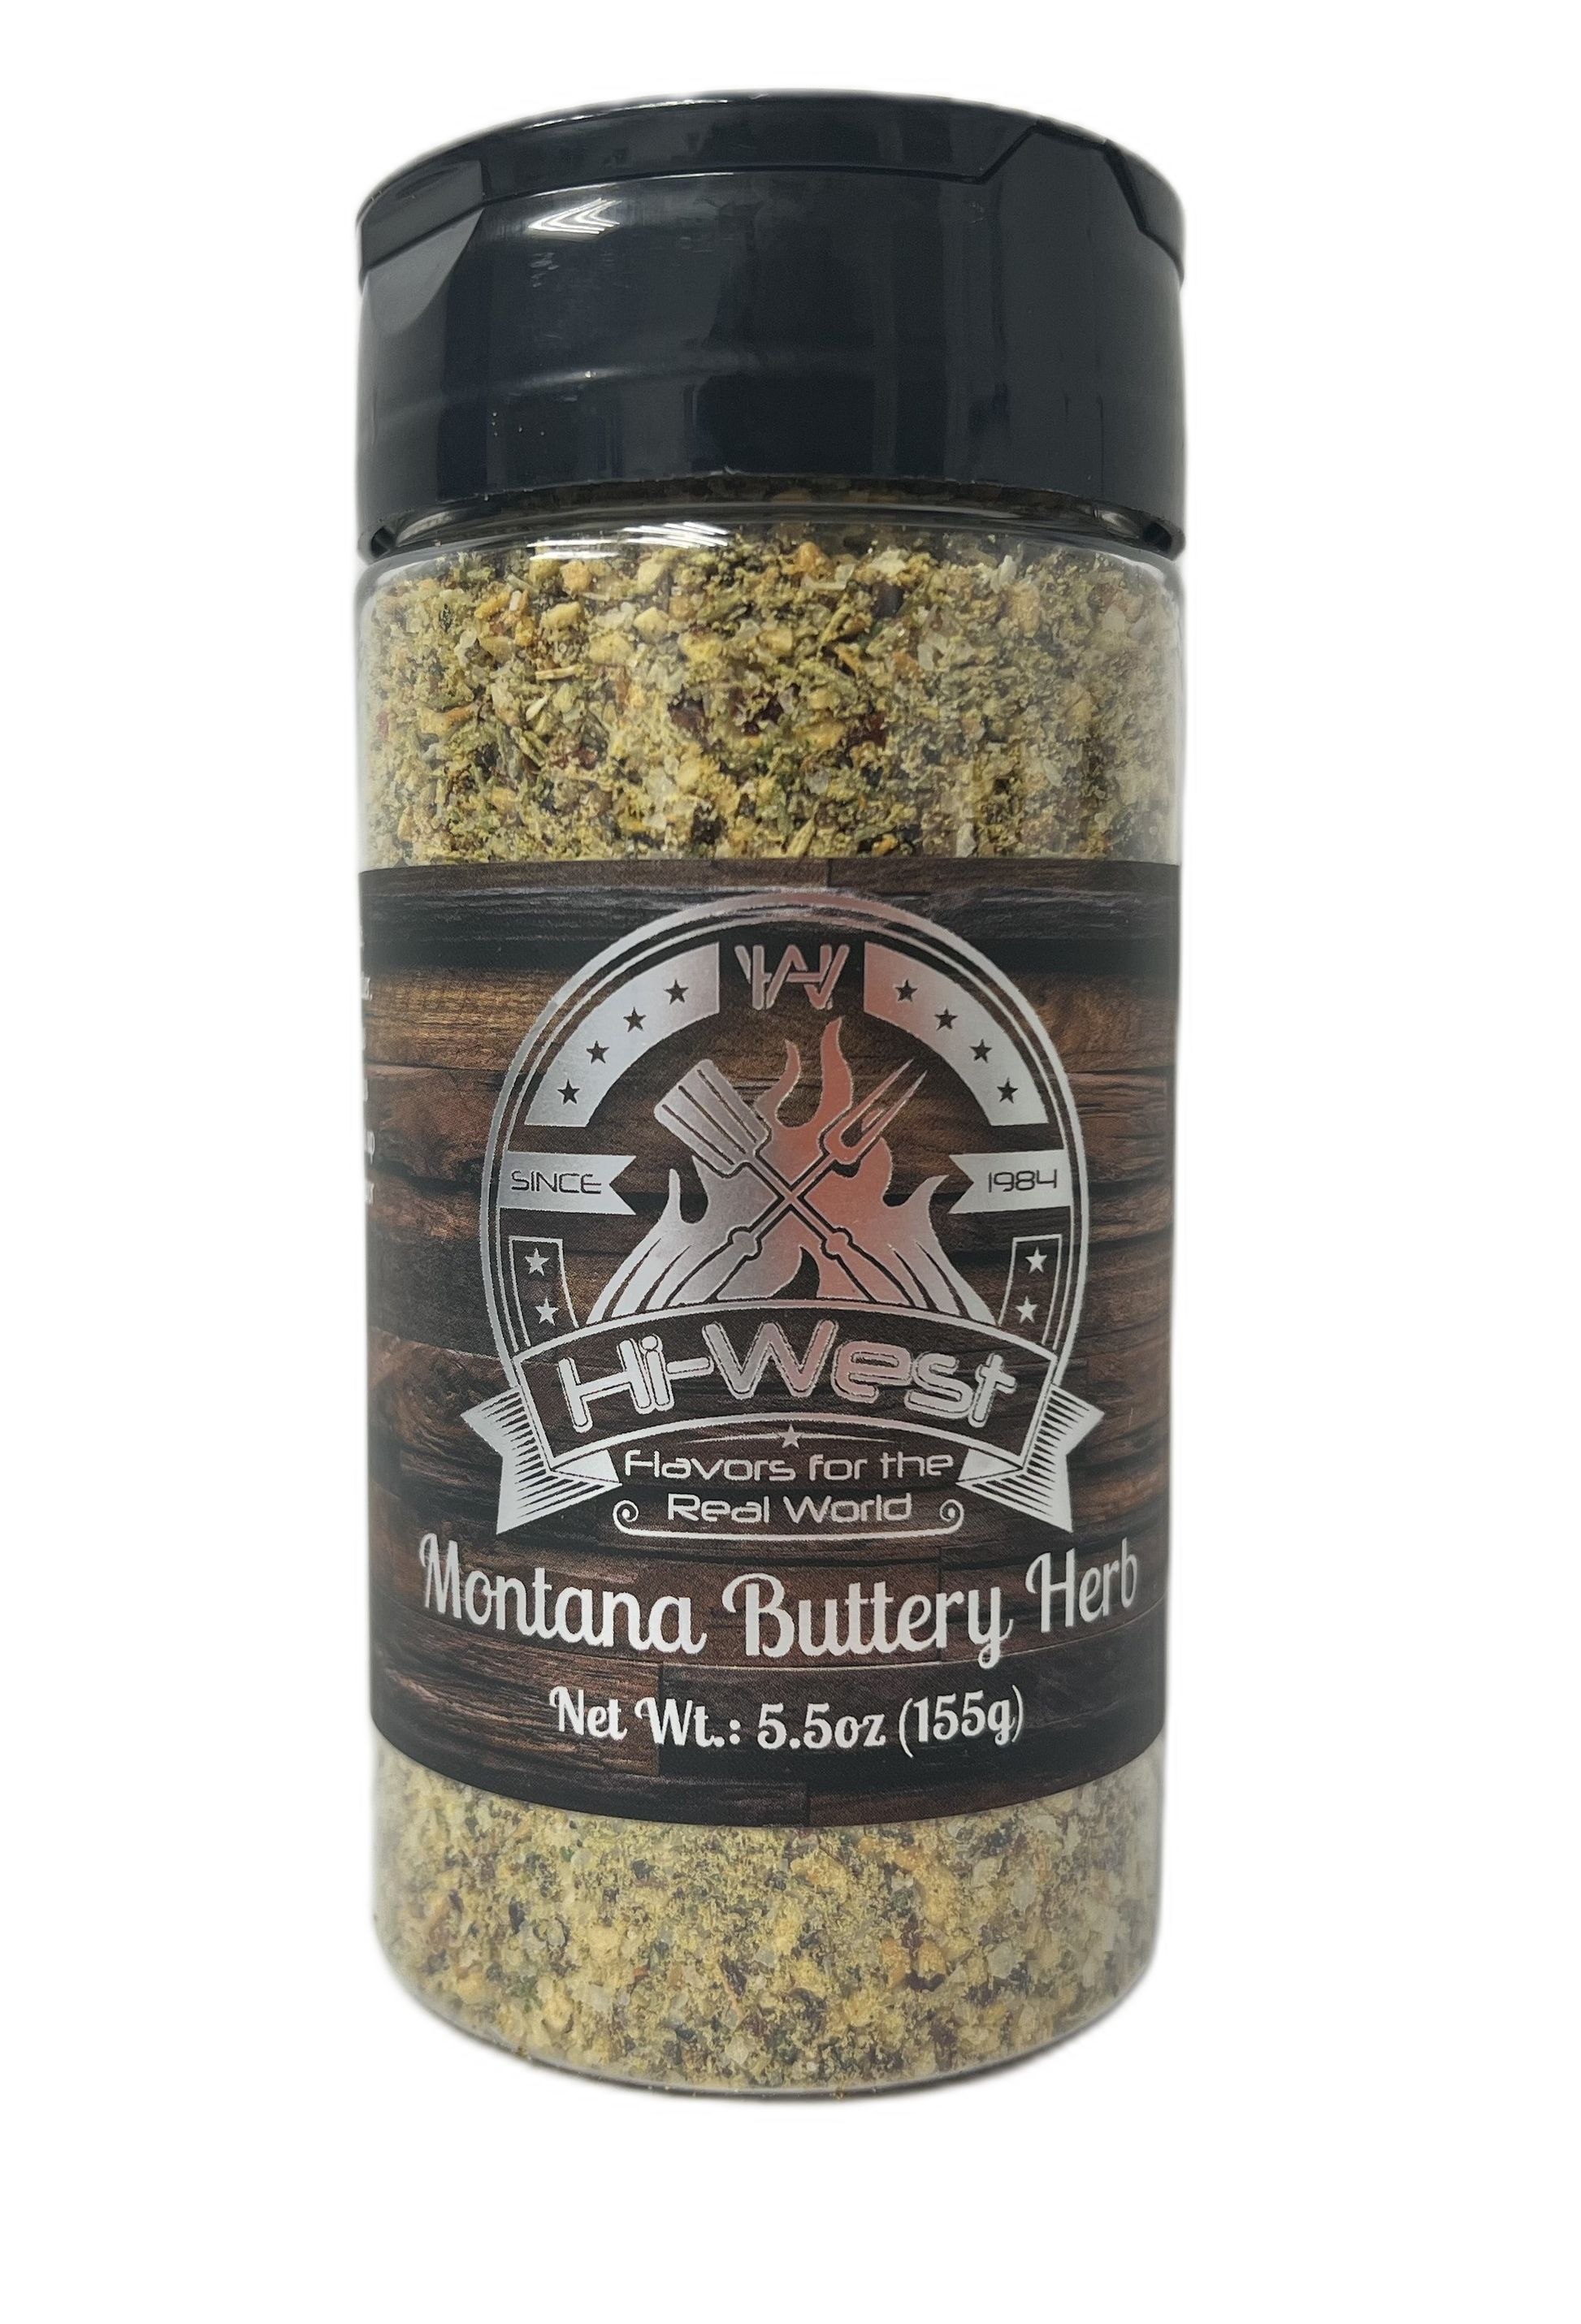 Hi-West Montana Buttery Herb 5.5oz